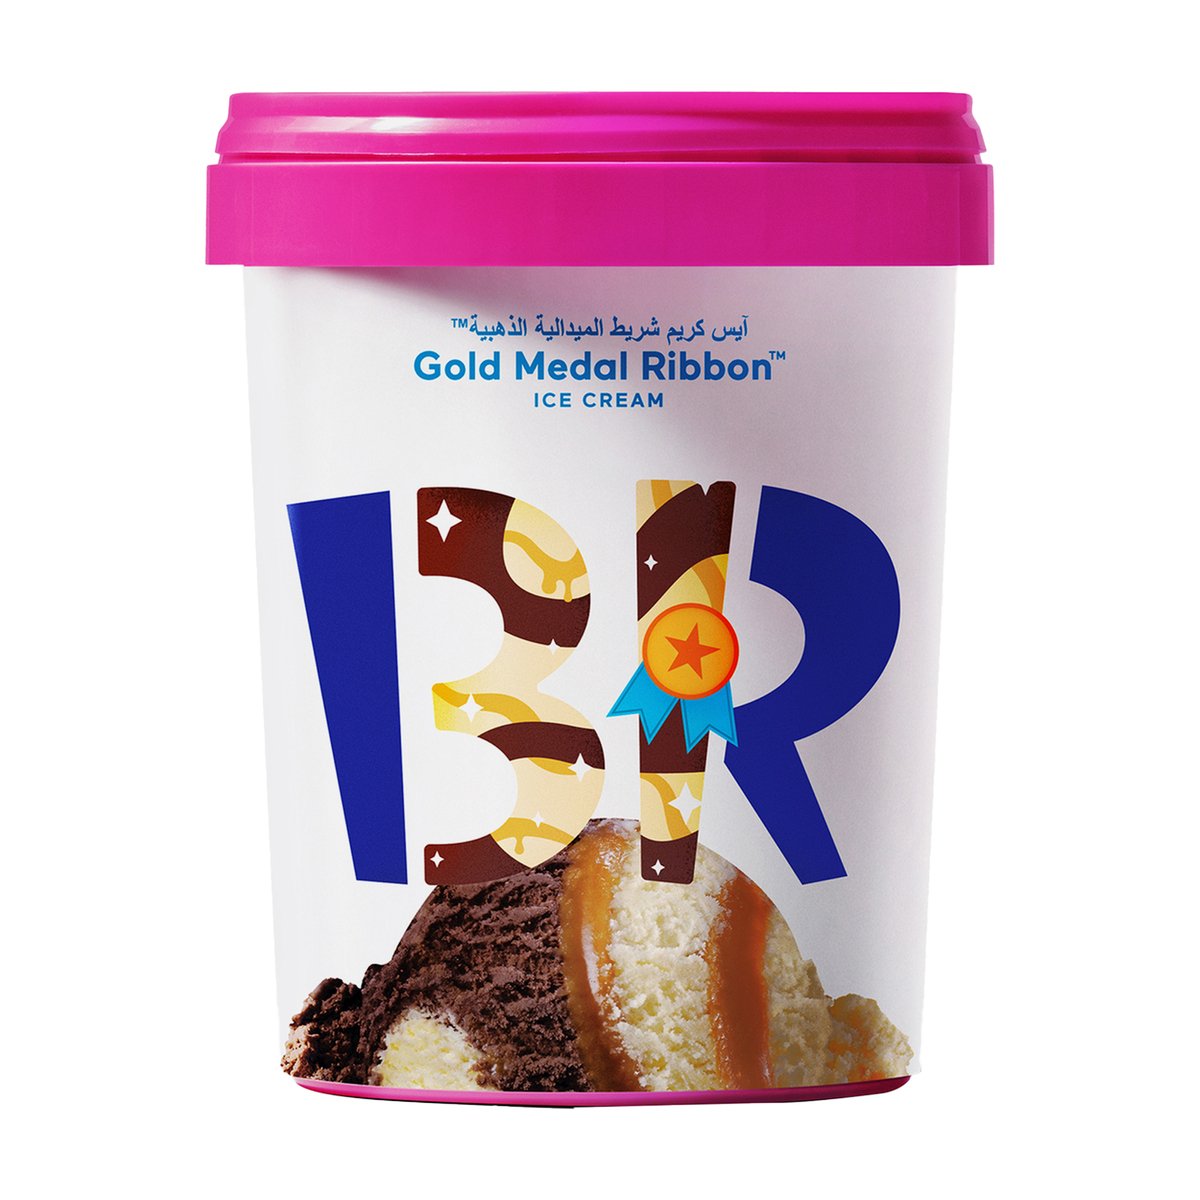 اشتري قم بشراء باسكن روبنز آيس كريم شريط الميدالية الذهبية 1 لتر Online at Best Price من الموقع - من لولو هايبر ماركت Ice Cream Take Home في السعودية